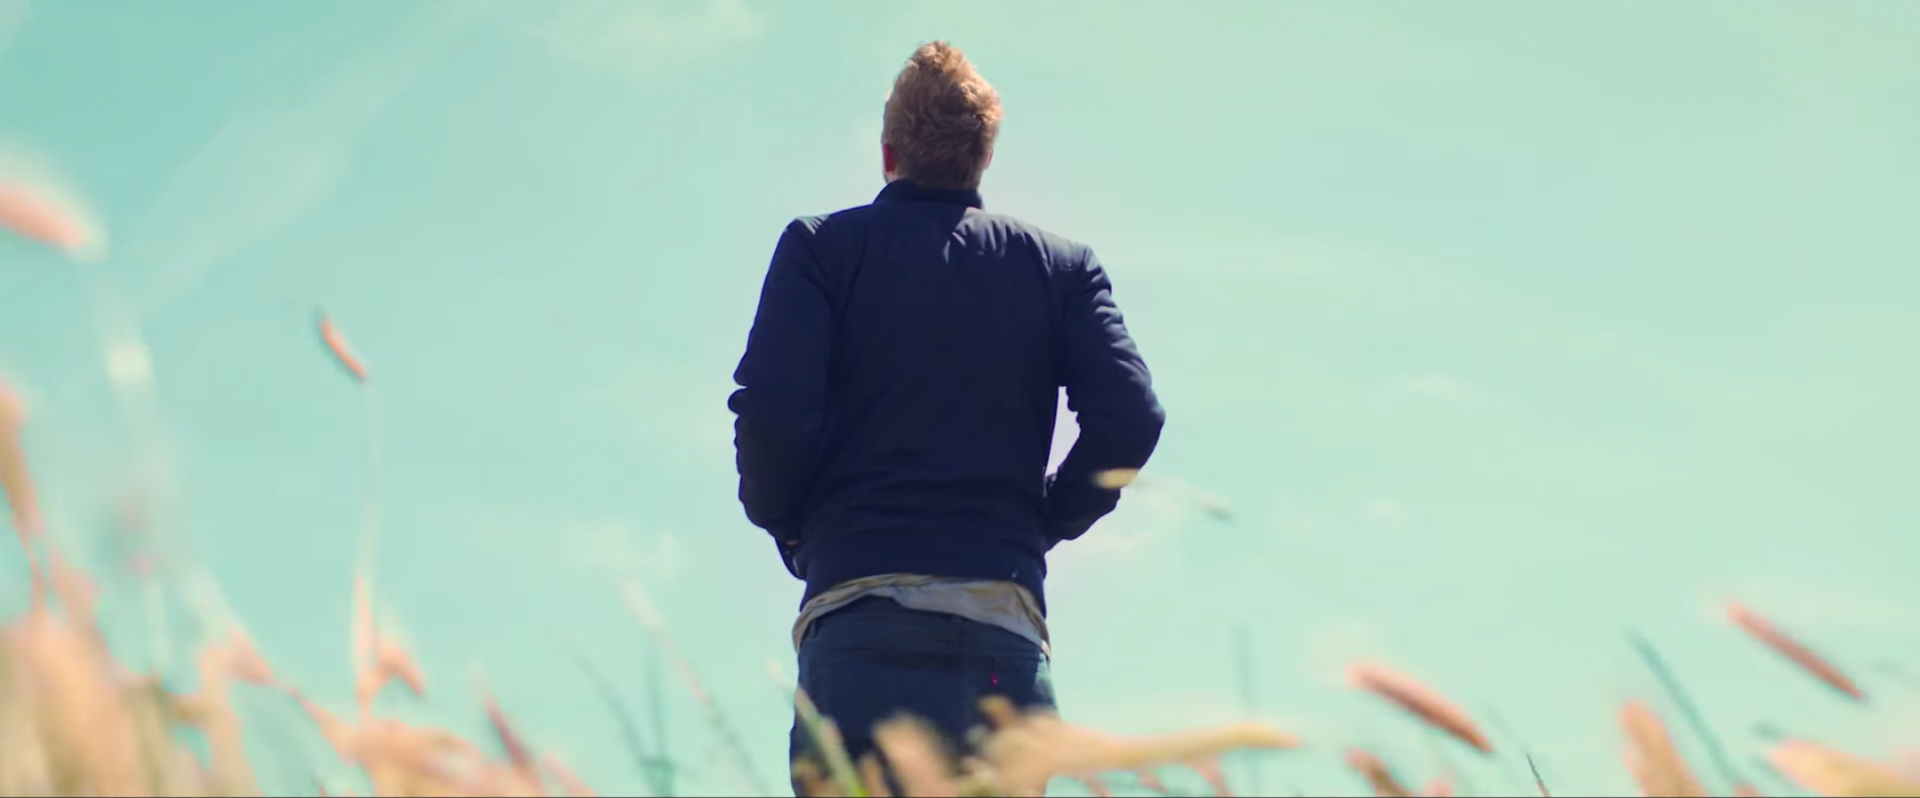 Joshua Nolet in de videoclip van ‘In Your Arms’